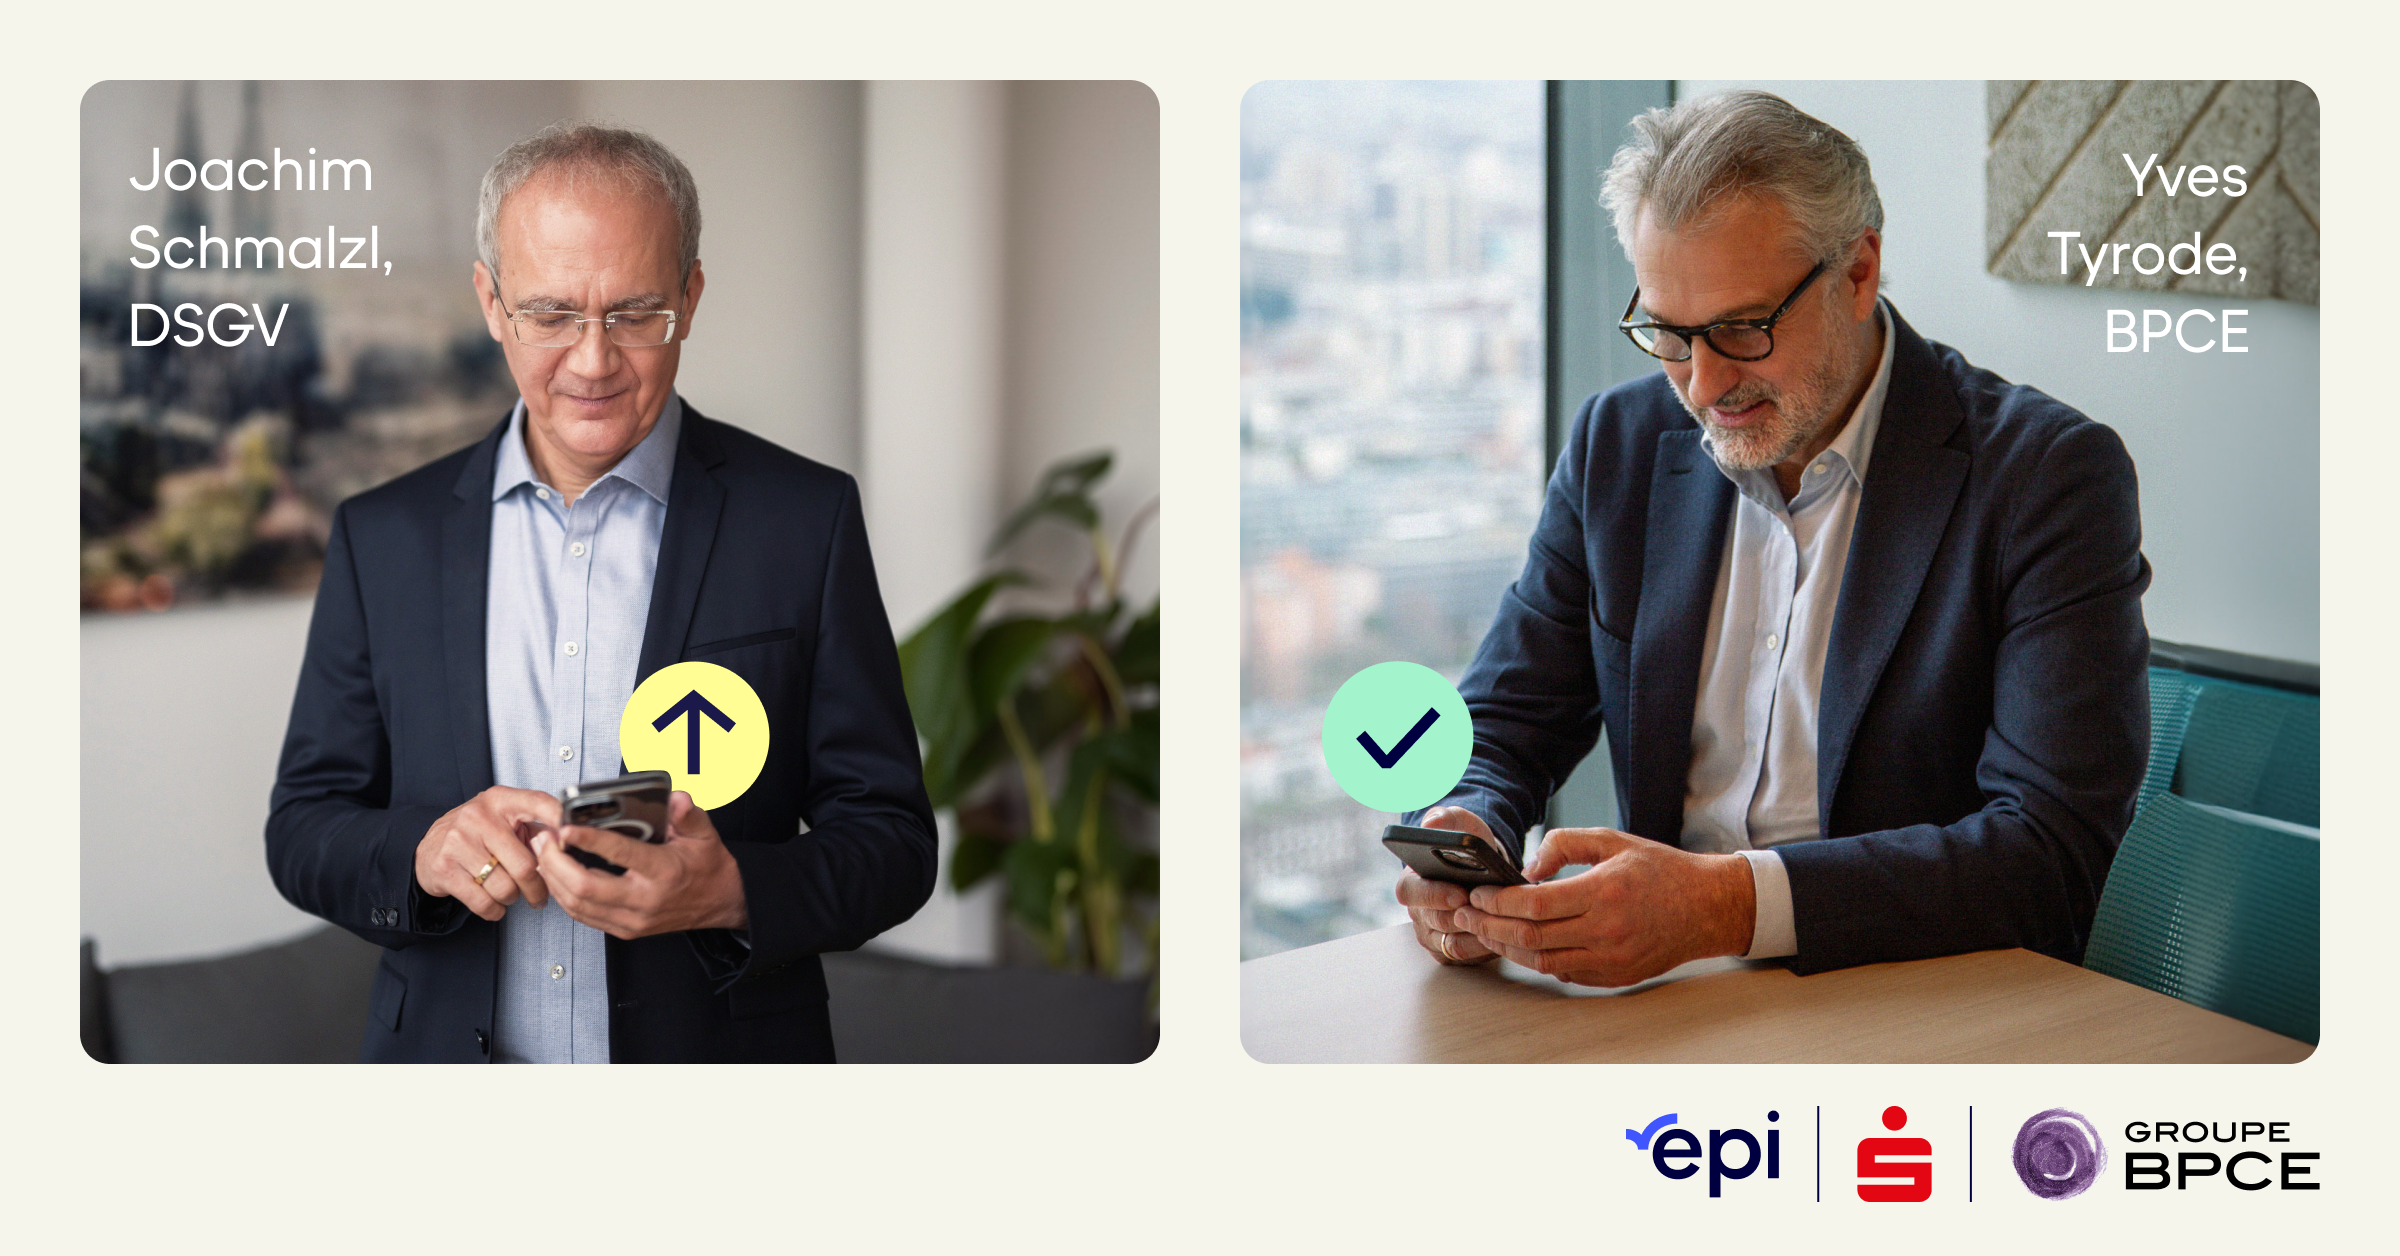 EPI réalise avec succès les premières transactions de paiement instantané en Europe avec wero entre des clients Banque Populaire et Caisse d’Epargne (Groupe BPCE) en France et de la banque Sparkasse Elbe-Elster en Allemagne 